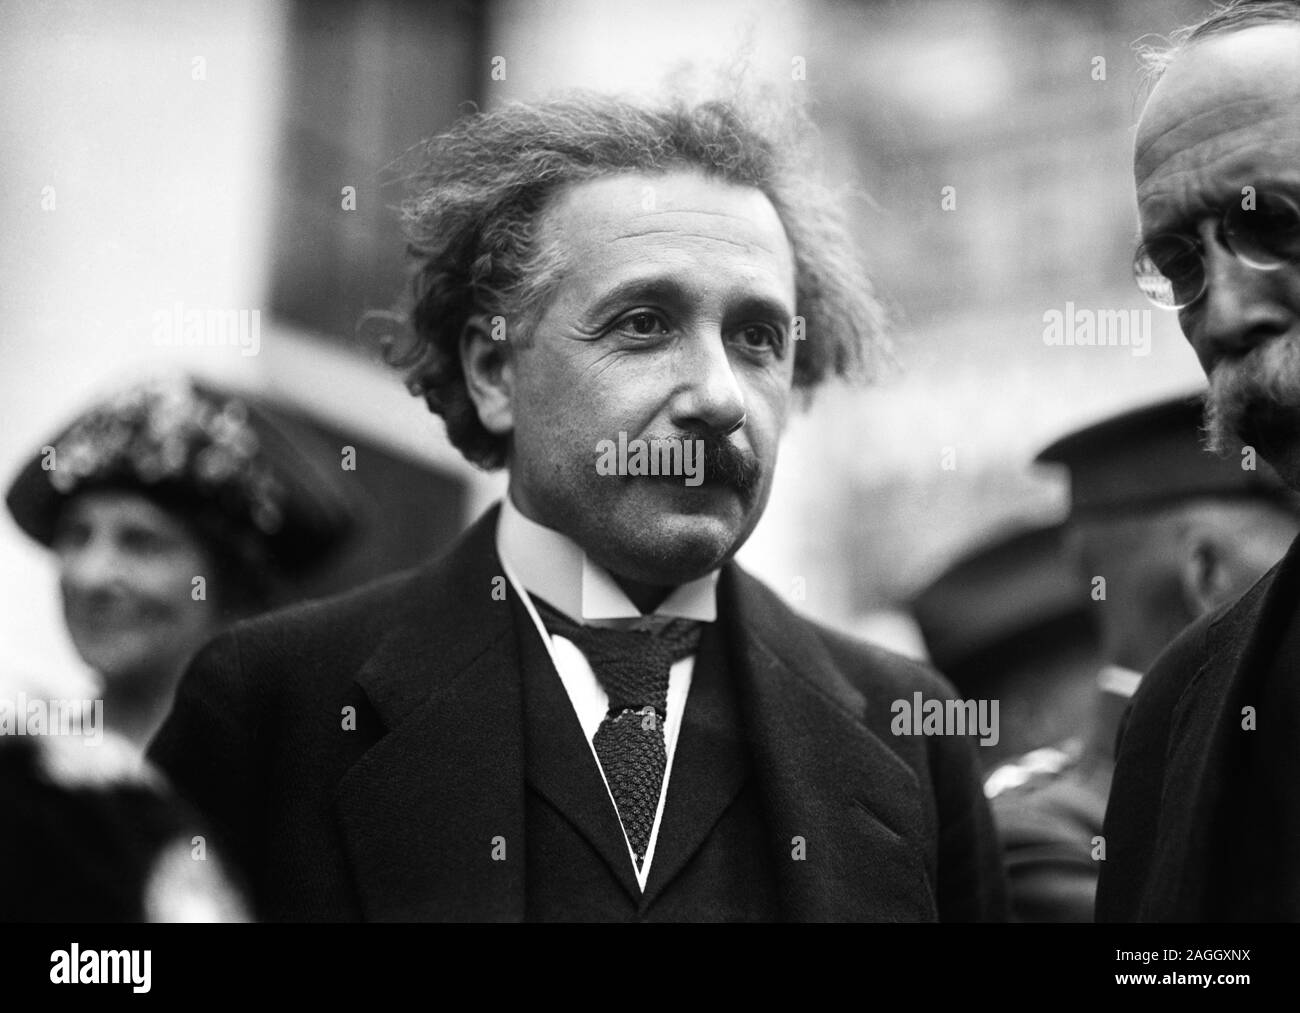 Vintage Foto der theoretischen Physiker Albert Einstein (1879 - 1955). Foto von Harris & Ewing in Washington DC ca. 1921 übernommen. Stockfoto